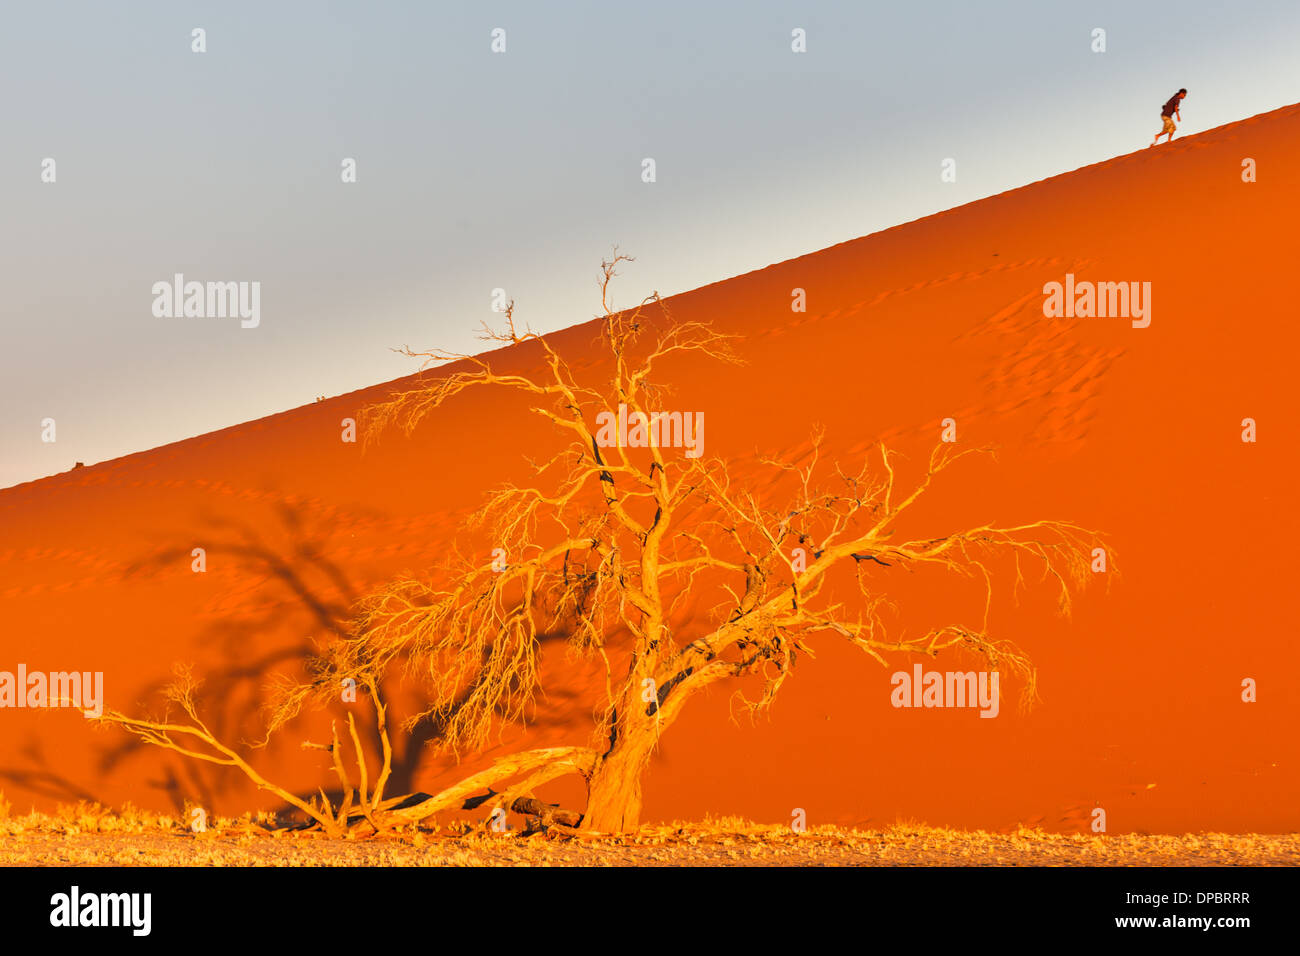 Personne grimpe une dune de sable derrière l'arbre oasis, Namibie Banque D'Images